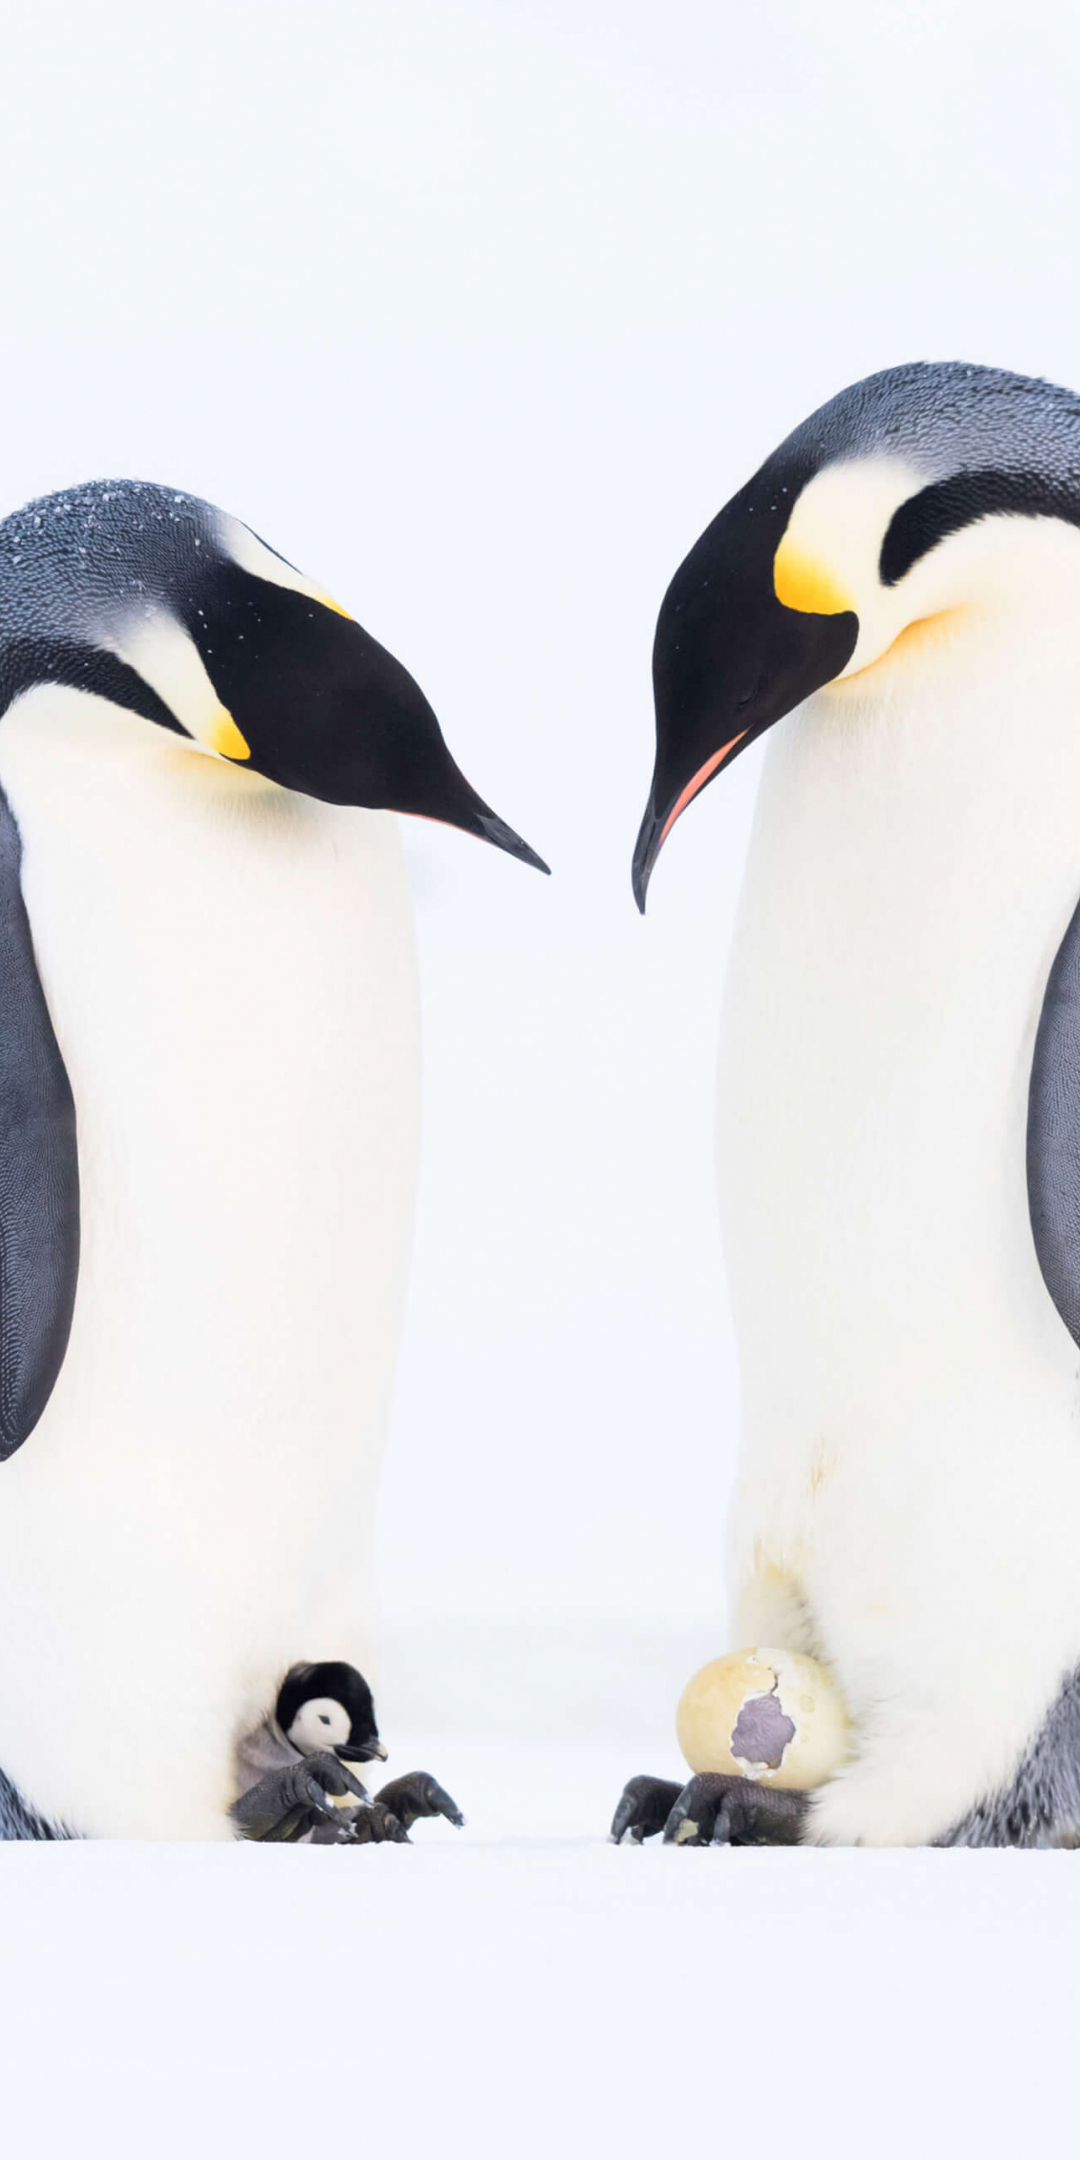 Penguins' family, animal, 1080x2160 wallpaper